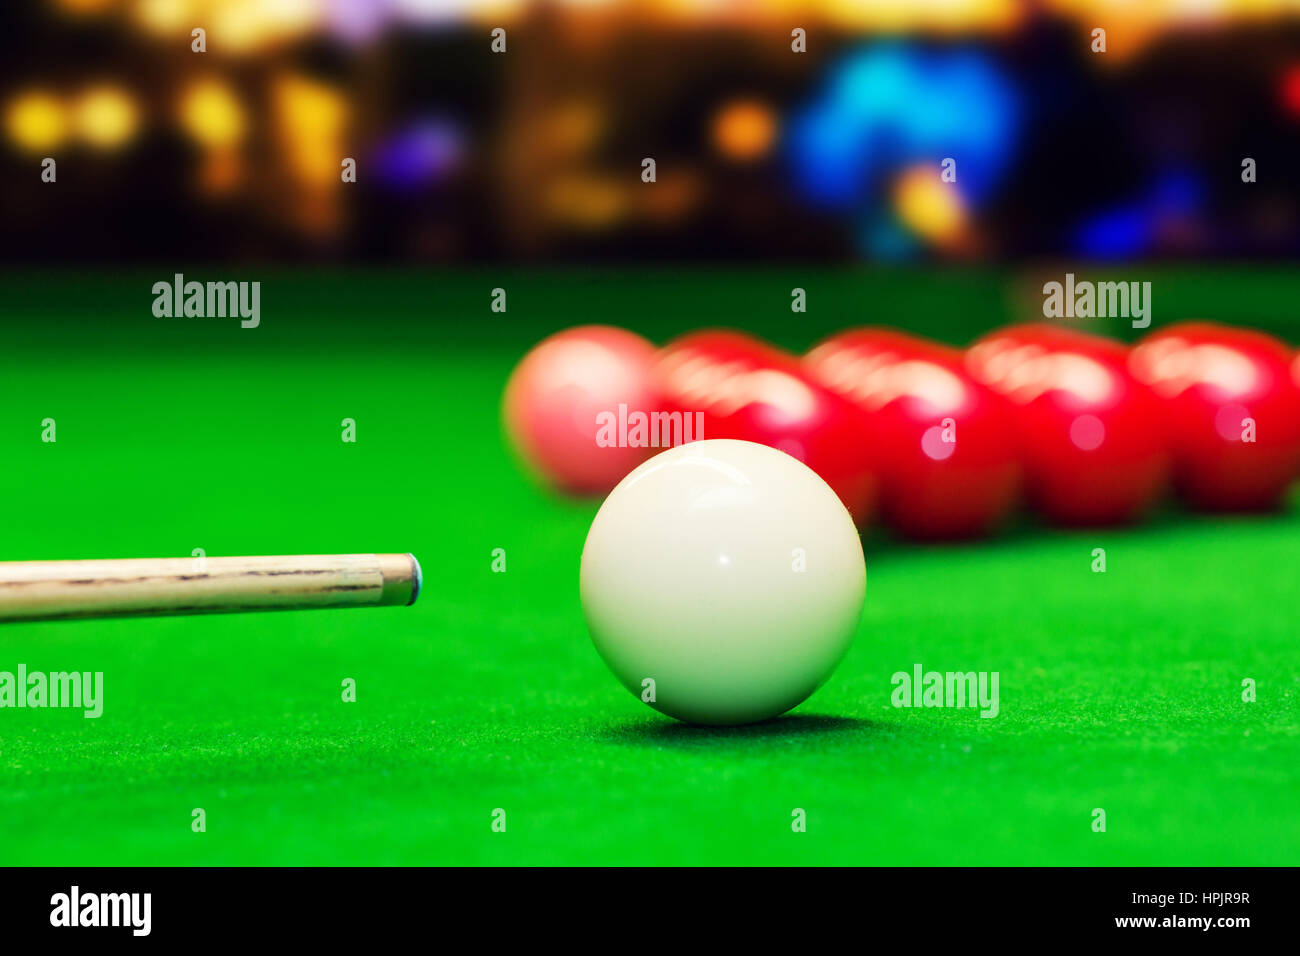 Snooker - viser la boule de choc Banque D'Images